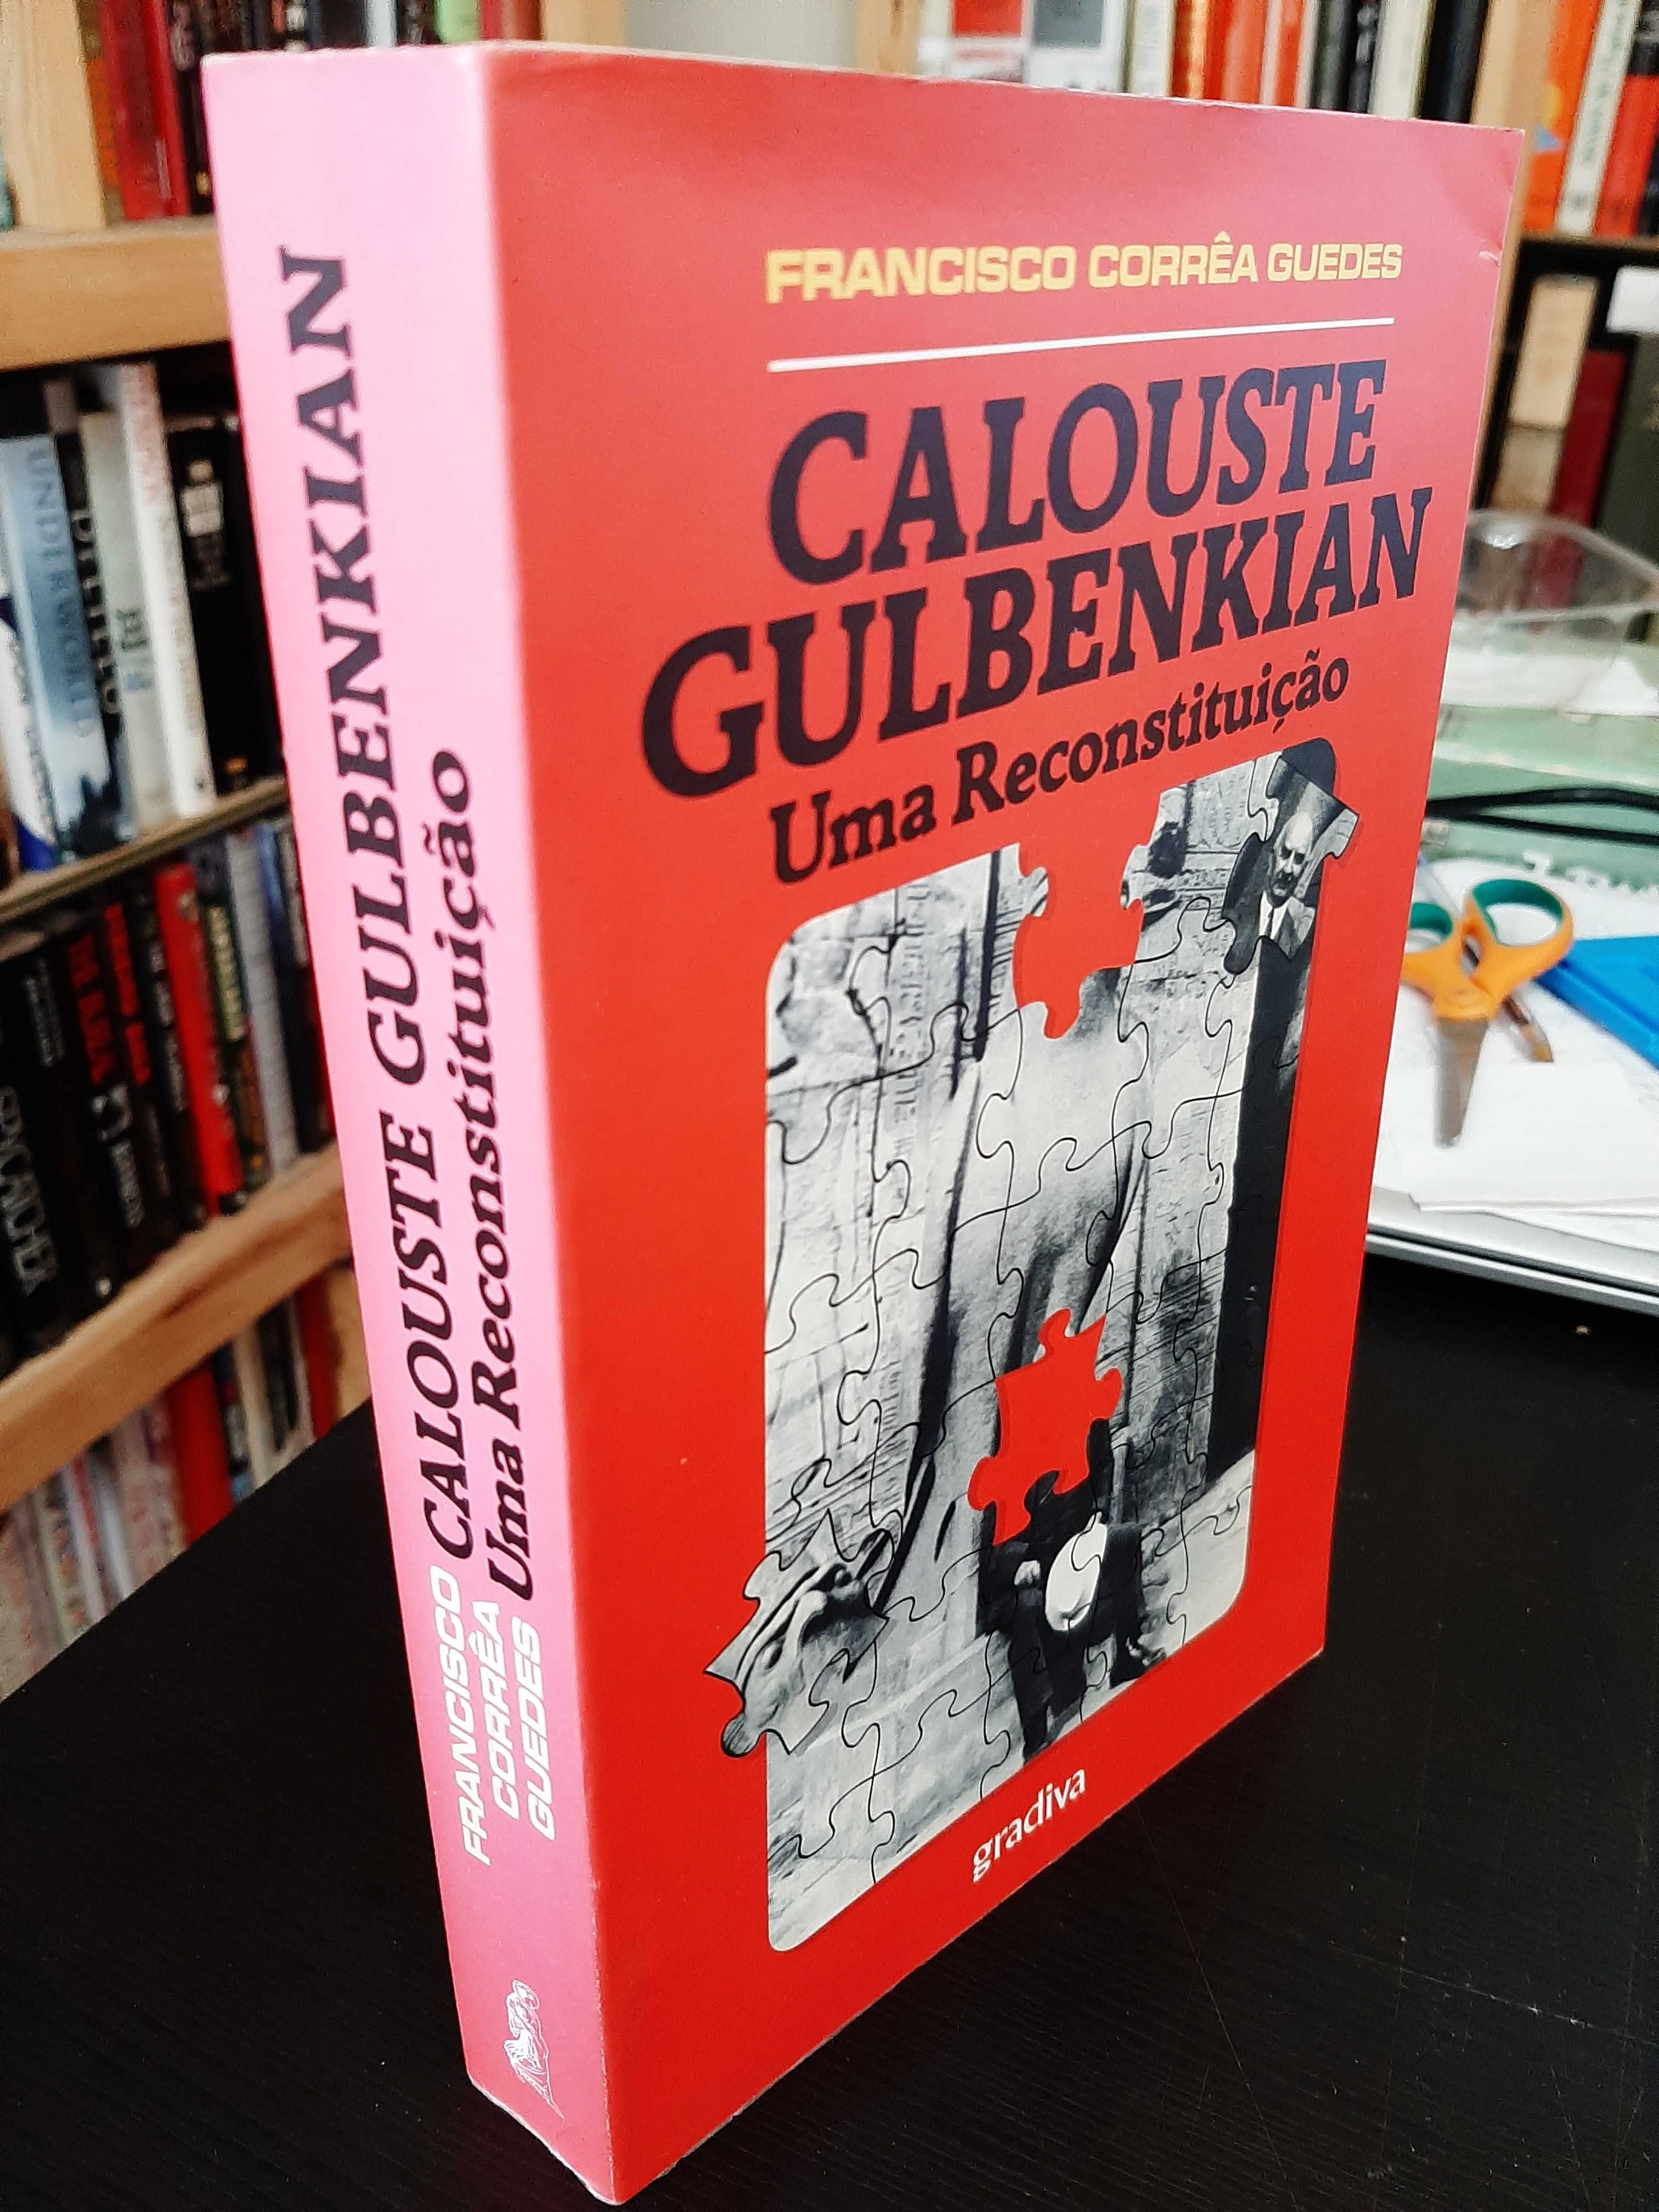 Francisco Corrêa Guedes - Calouste Gulbenkian: Uma Reconstituição